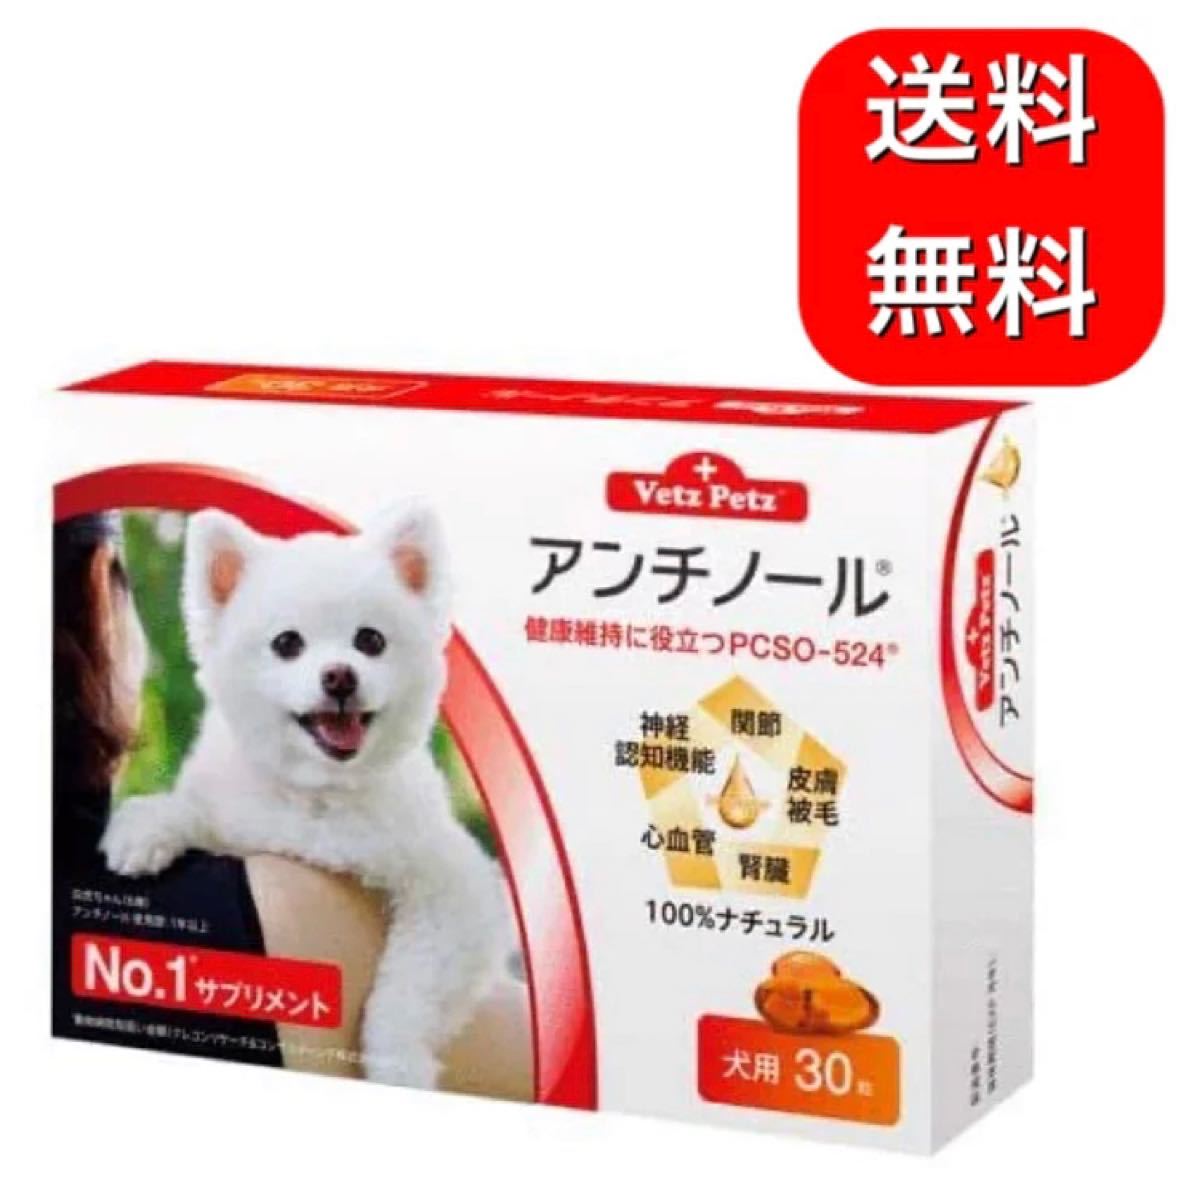 犬用アンチノール30カプセル×4箱(120カプセル) - brandsynariourdu.com